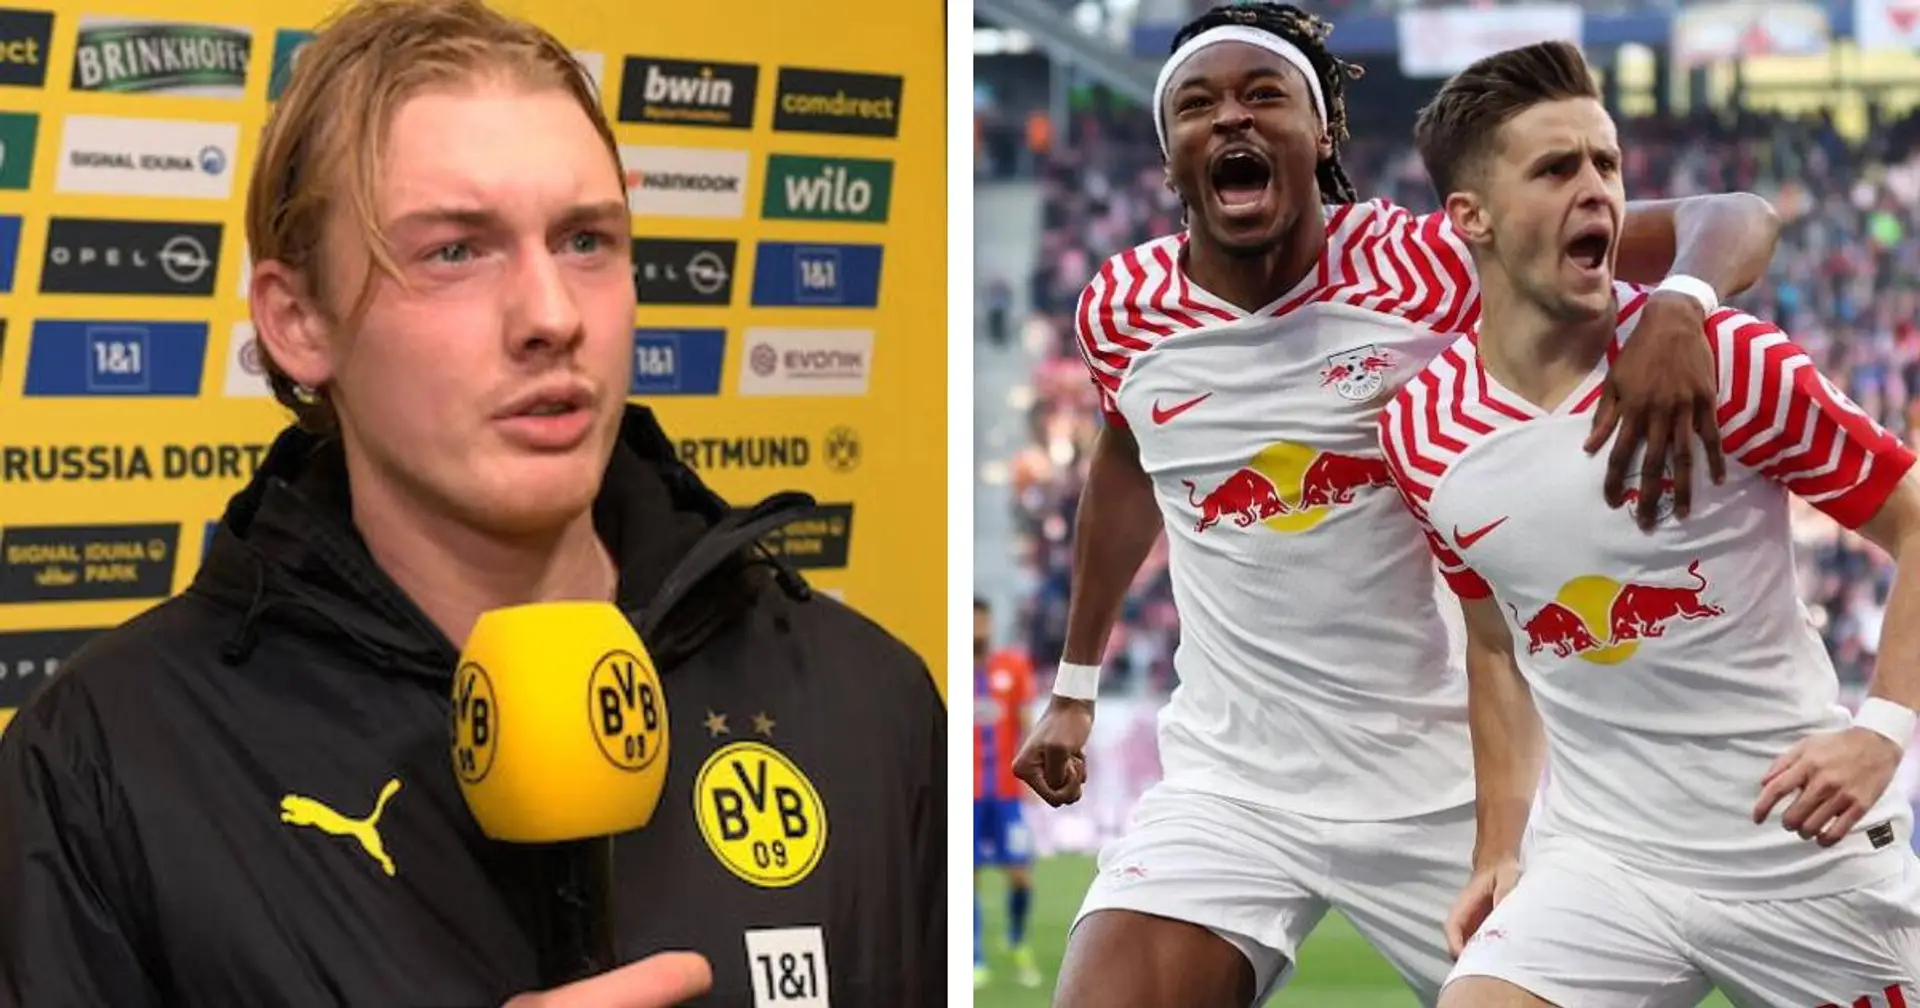 Brandt hofft auf Auswärtssieg im Top-Duell in Leipzig: "Es wird mal wieder Zeit, dort zu gewinnen"